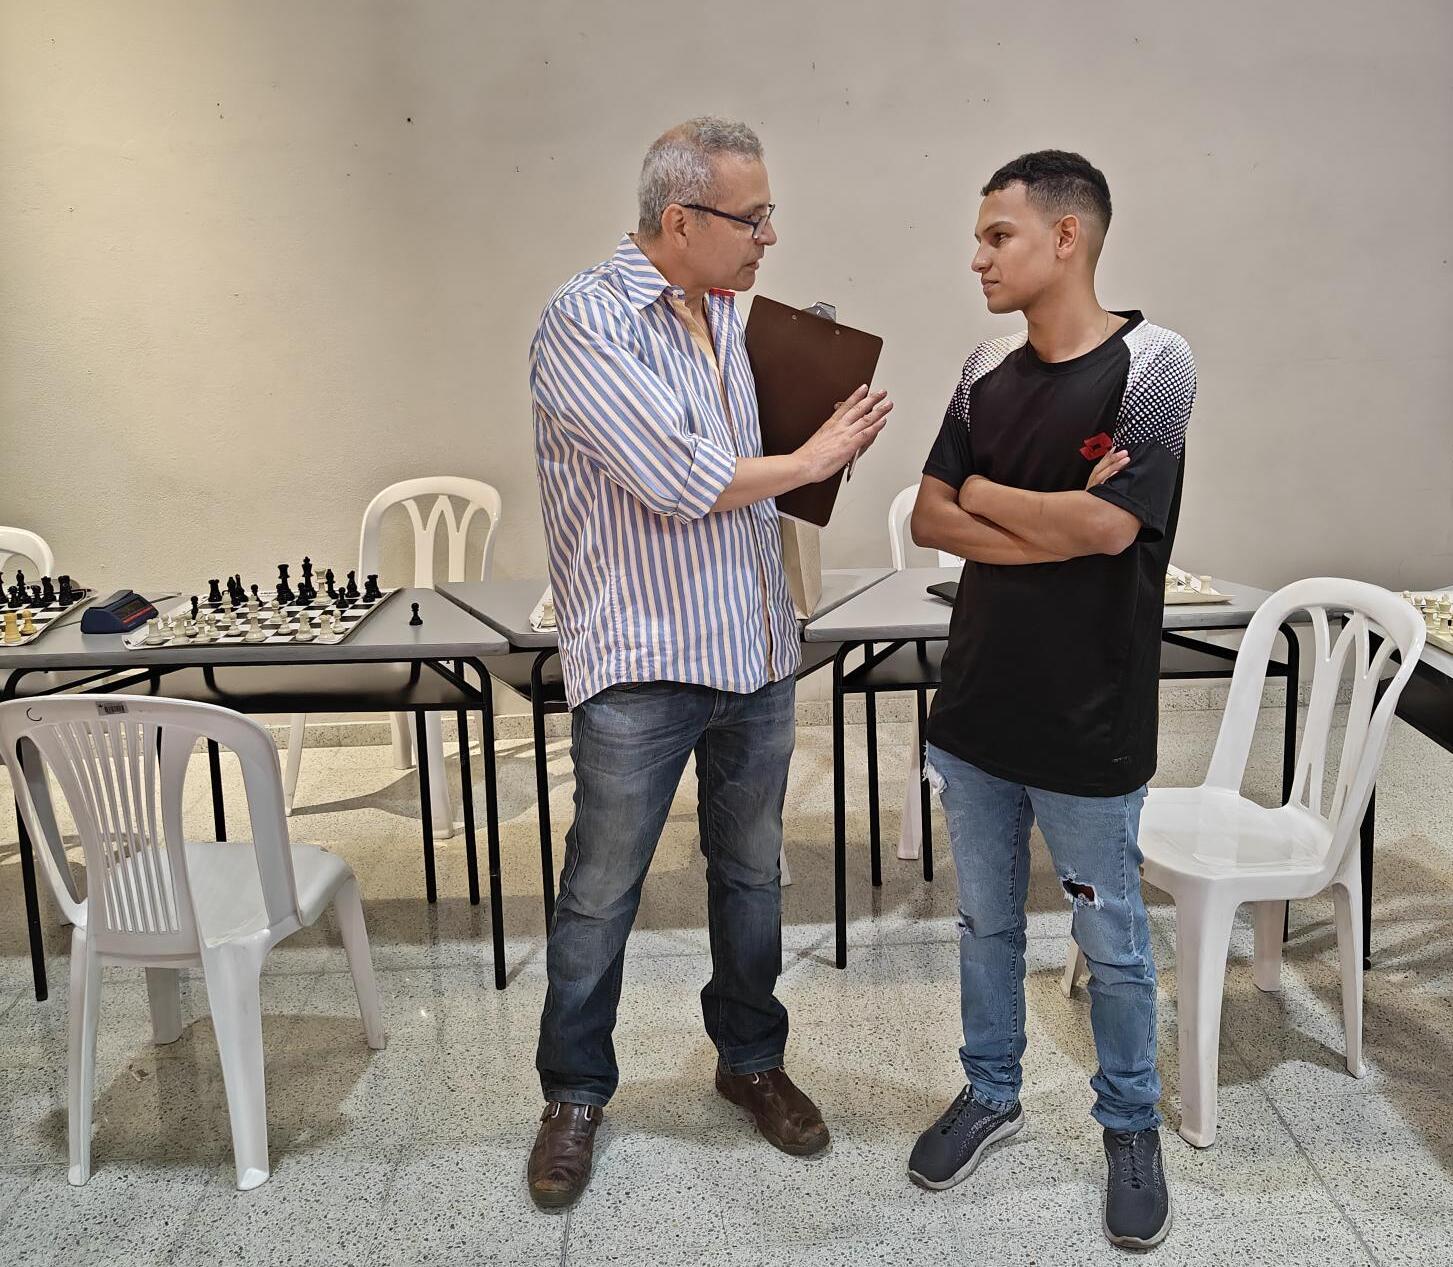 Estudiante de Ingeniería Industrial se corona campeón en torneo de Ajedrez